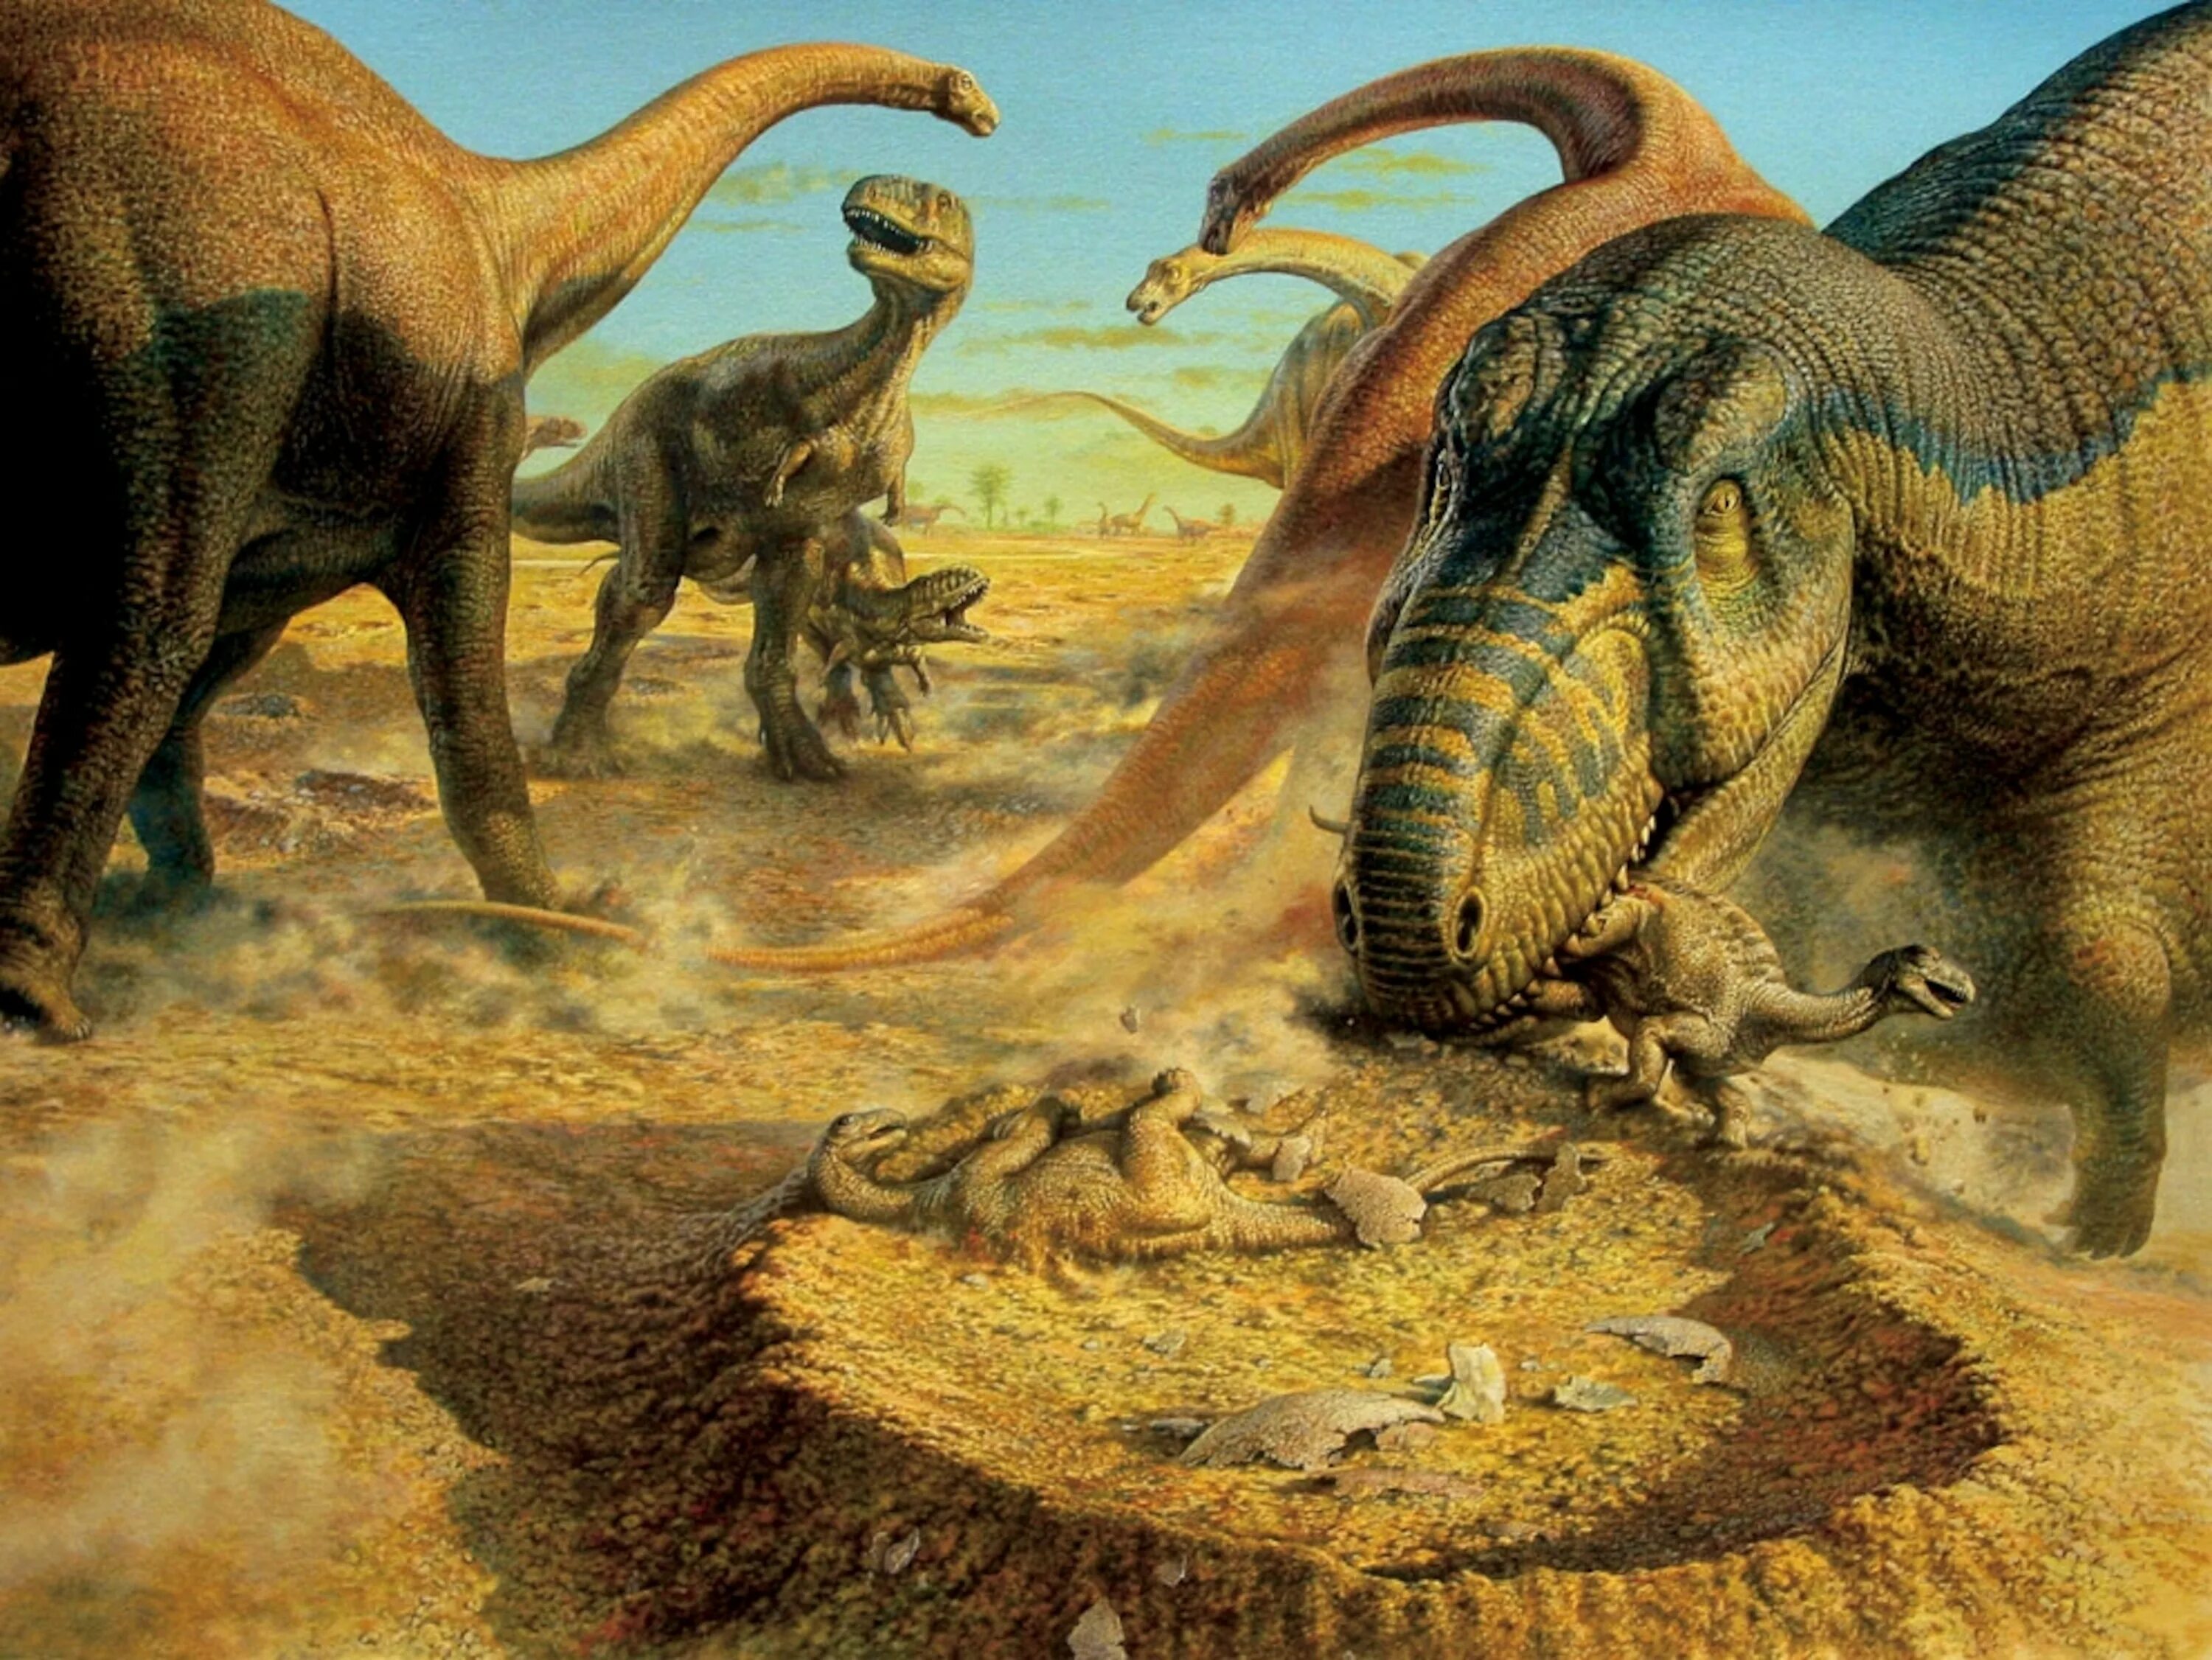 Джон Сиббик палеохудожник. Мезозойская Эра Юрский. Джон Сиббик динозавры. Юрский период мезозойской эры.